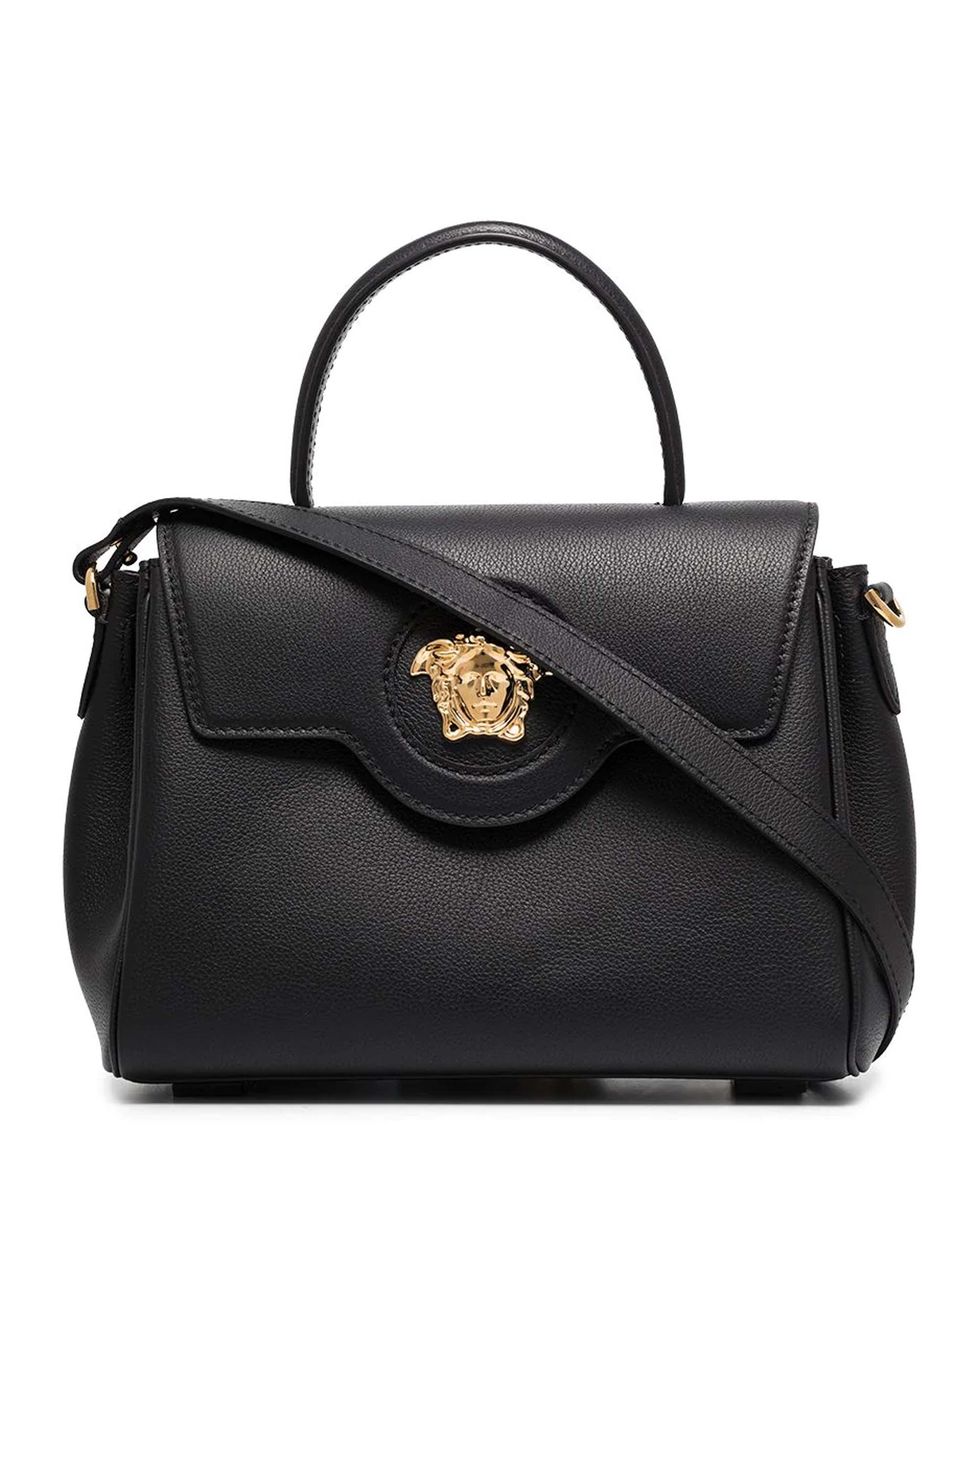 Women's Versace Designer Handbags